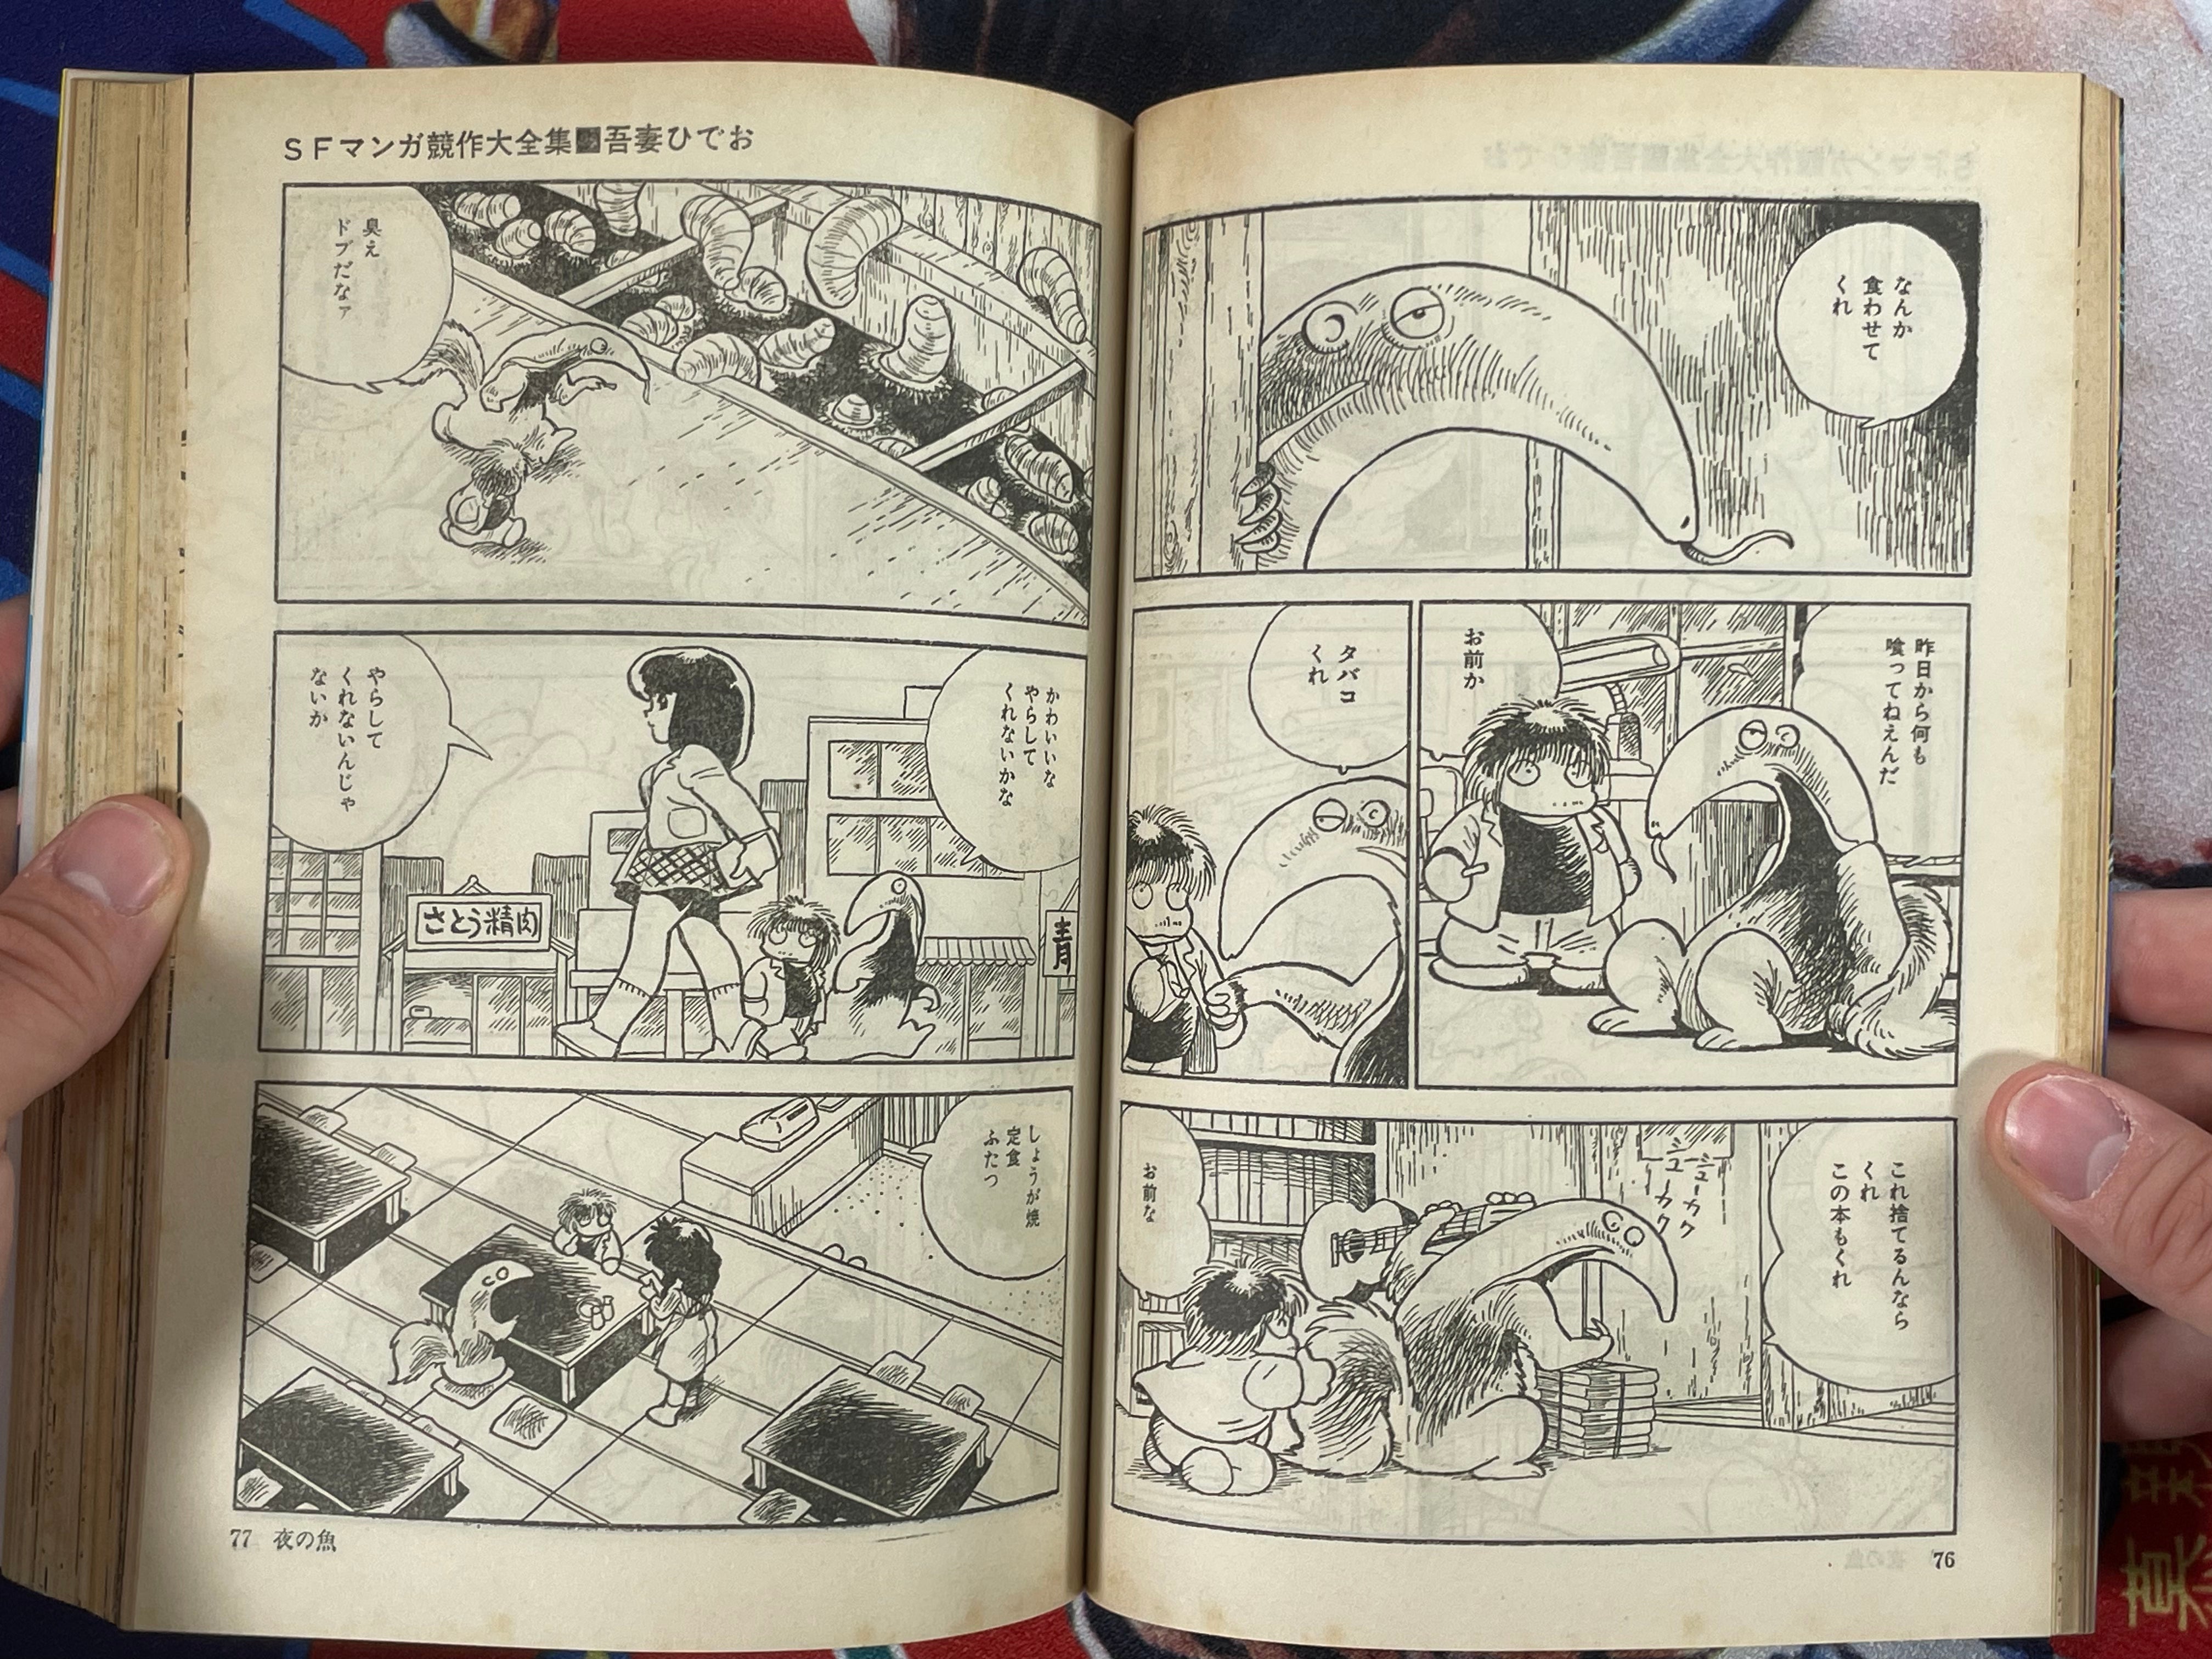 SF Manga Kyosaku Big Collection Magazine Part 25 - 5/1984